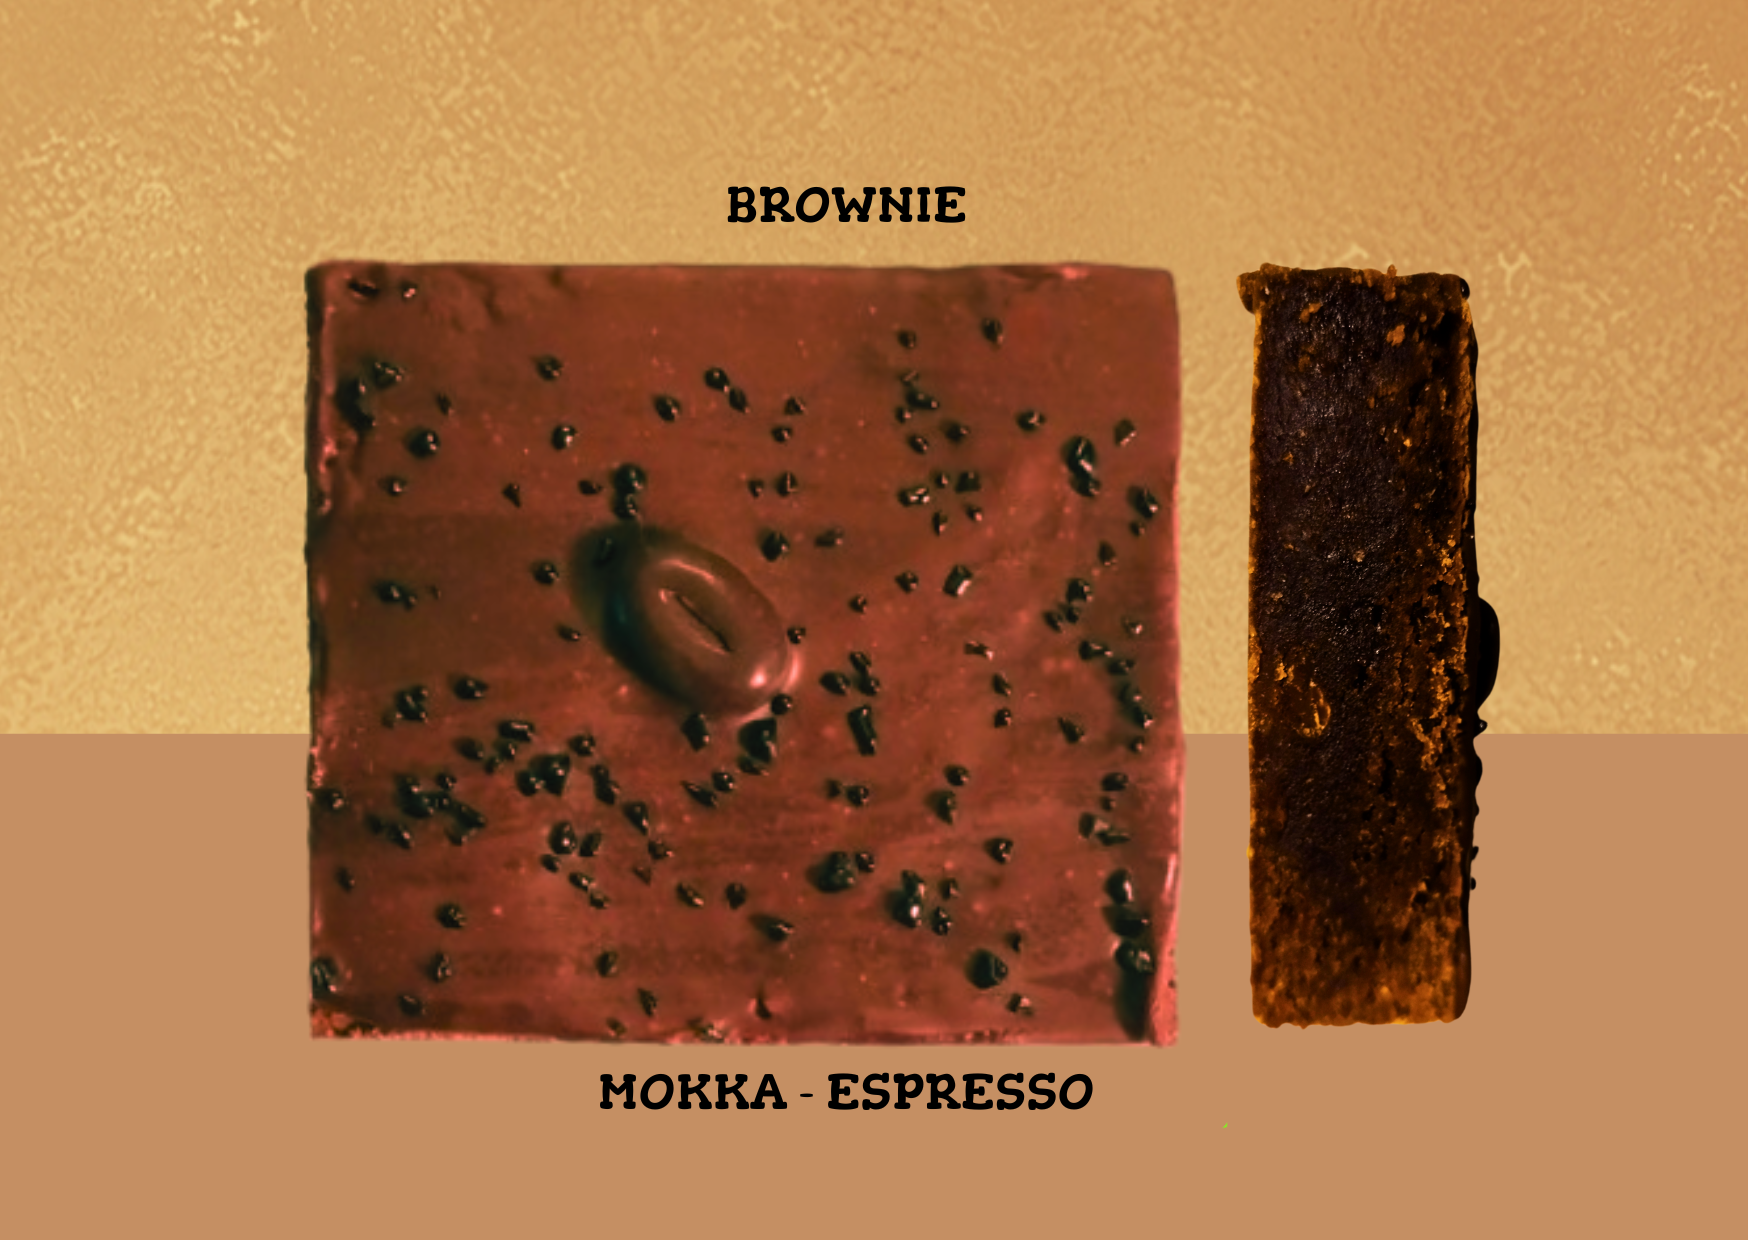 Brownie met mokka en espresso